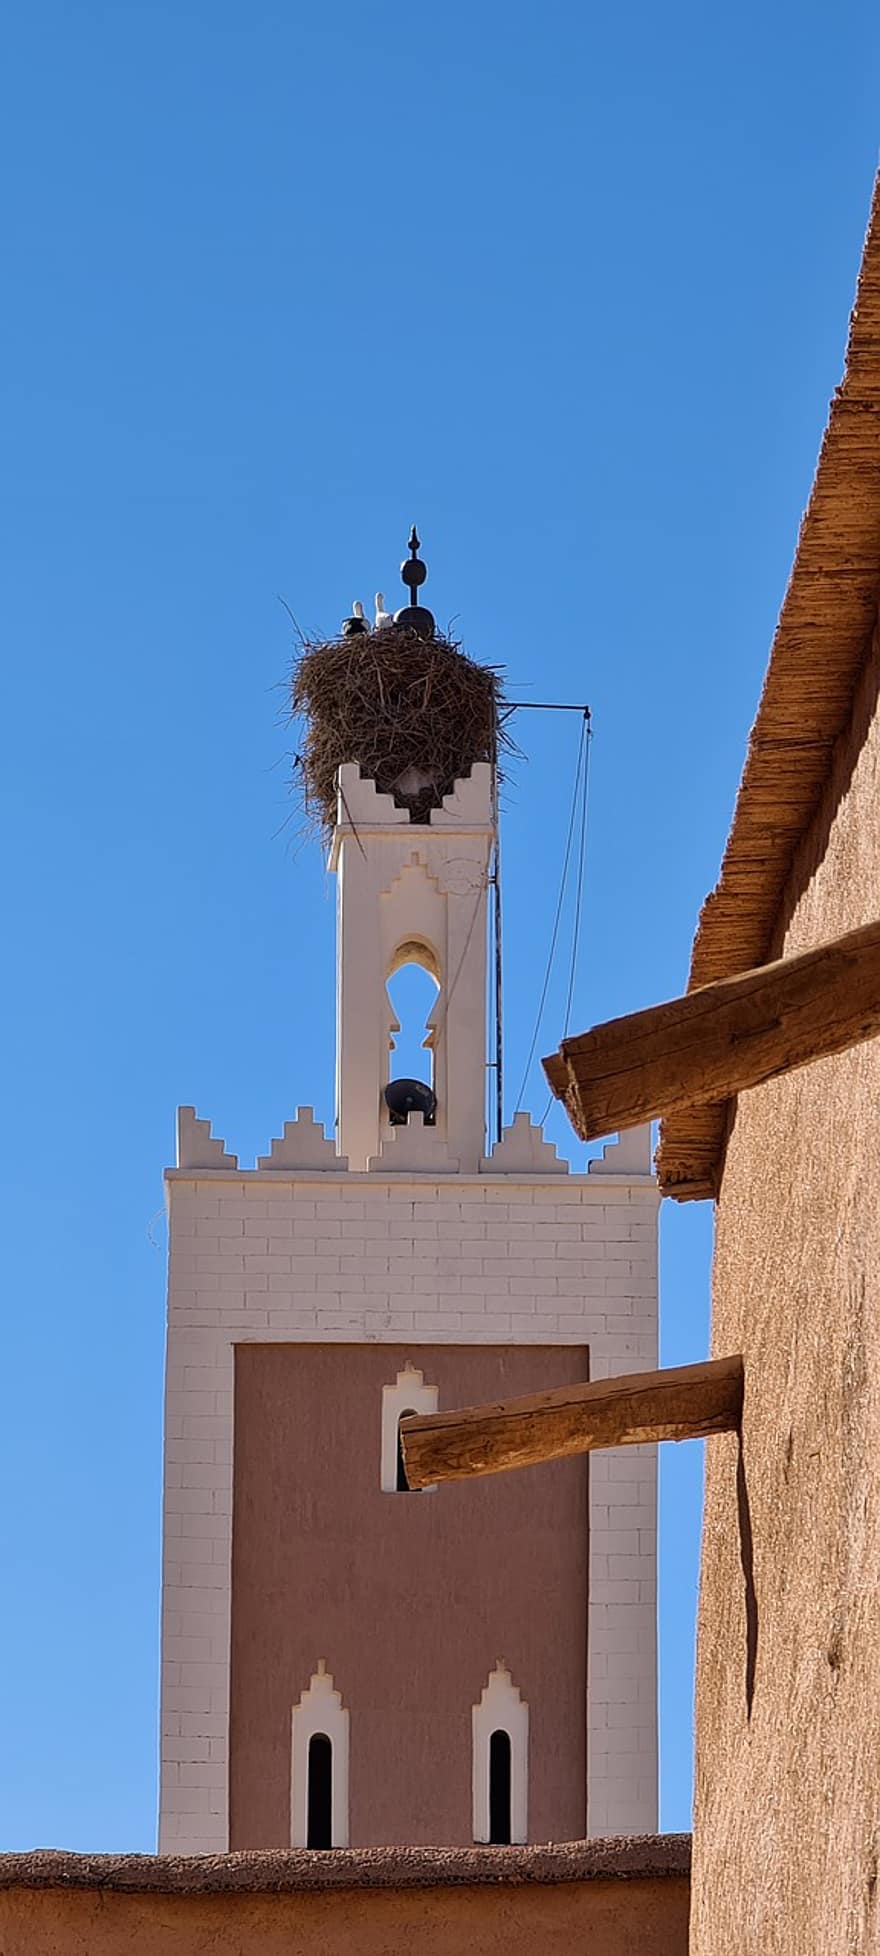 ouarzazate, marroquí, arquitectura, cristianisme, religió, cultures, història, lloc famós, vell, estructura construïda, exterior de l'edifici